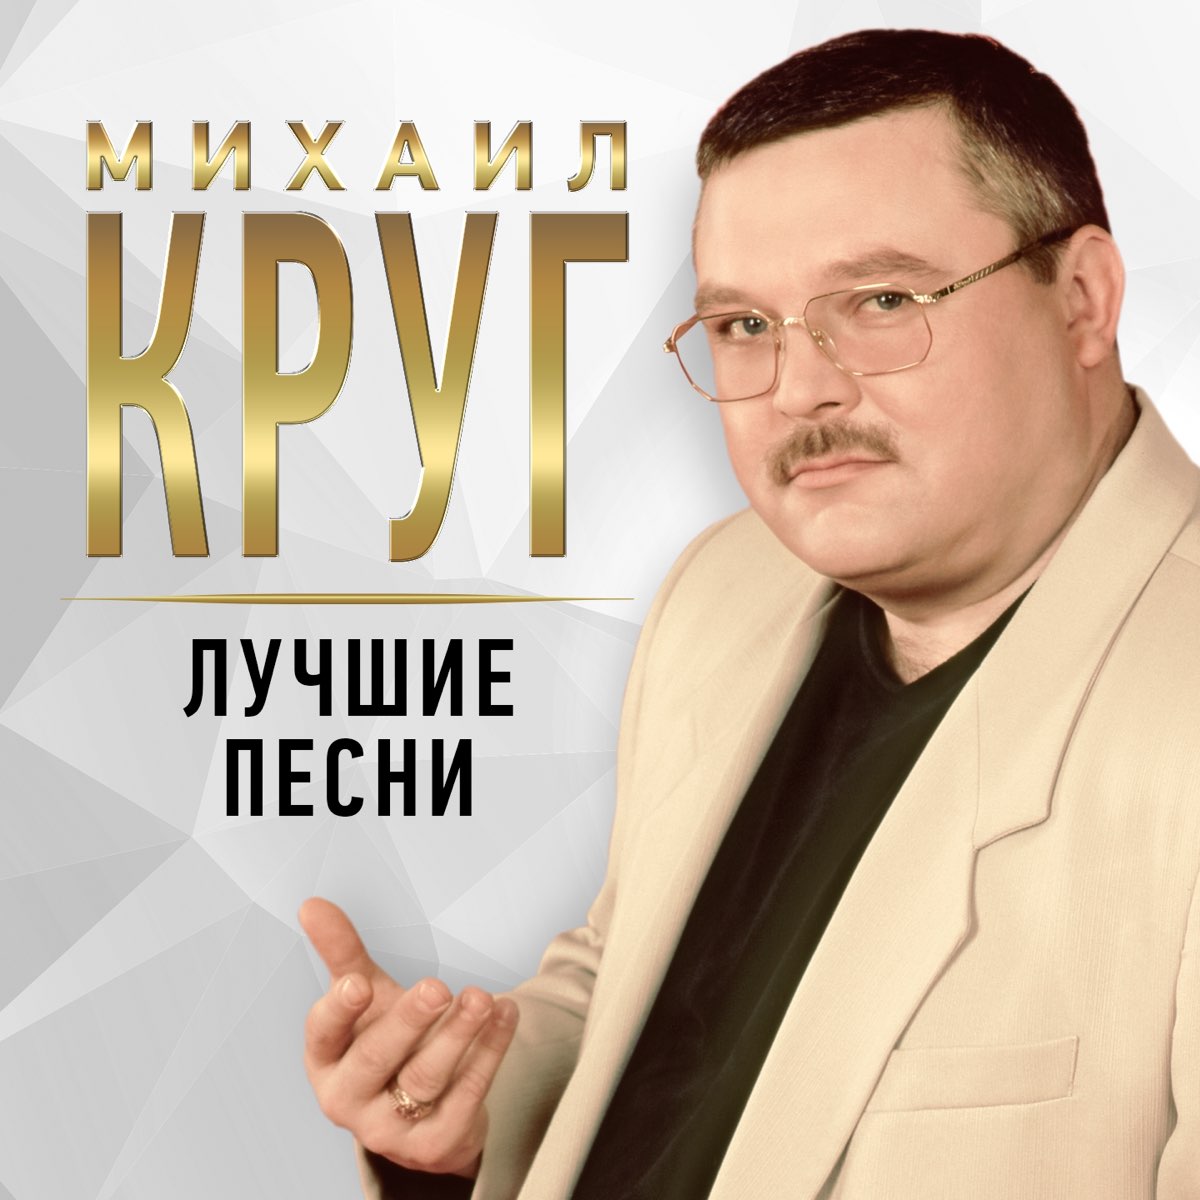 Михаил Круг - Владимирский централ